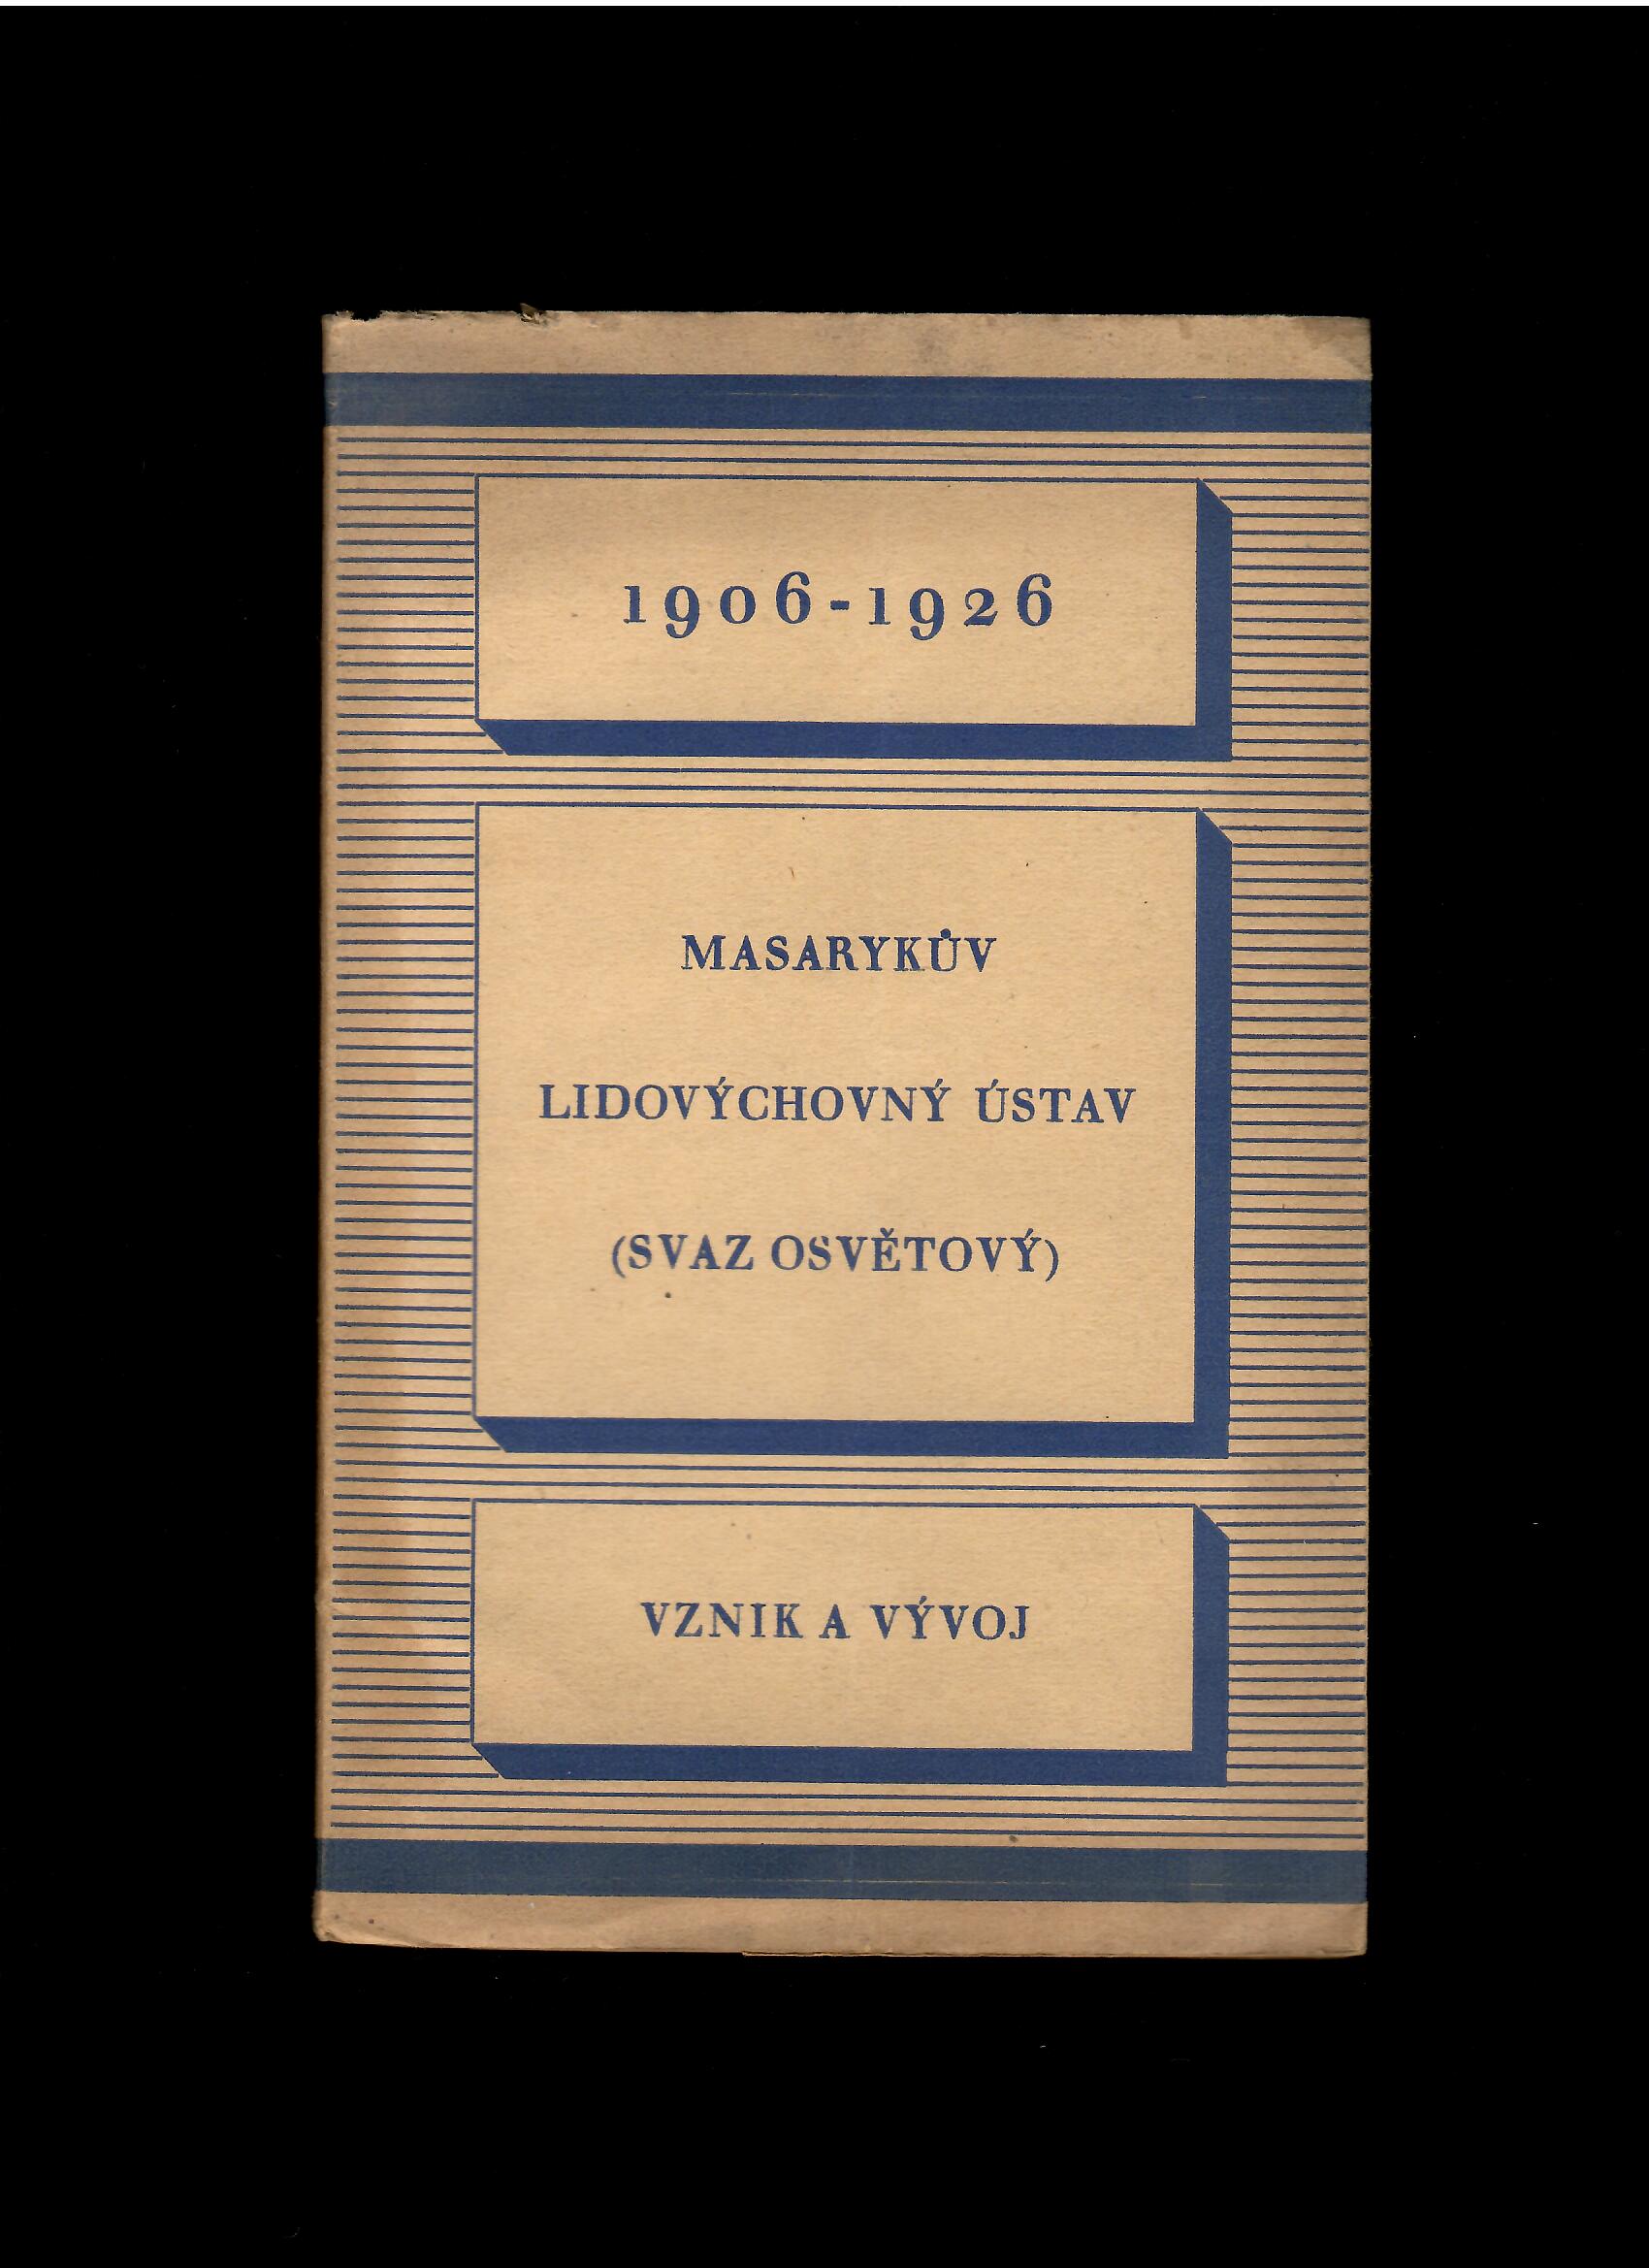 Rambousek, Trnka: Masarykův lidovýchovný ústav. Jeho vznik a vývoj 1906-1926